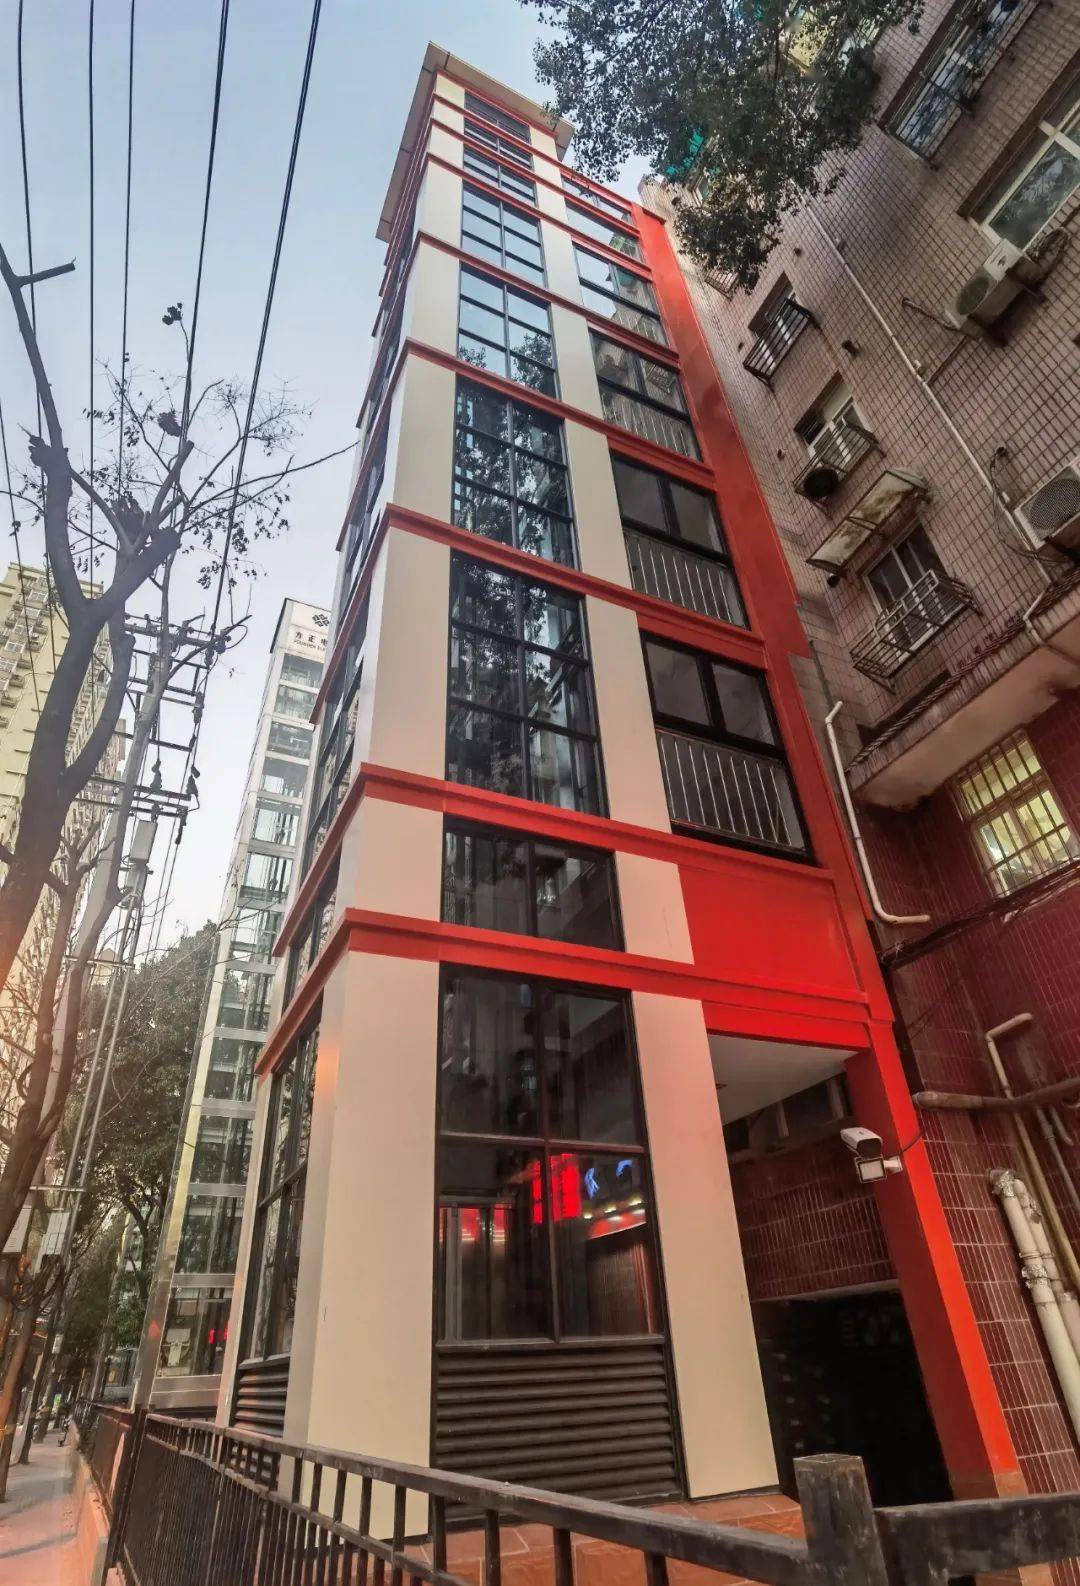 验收要求和维护保养要求等方面,为本市既有多层住宅加装电梯提出了